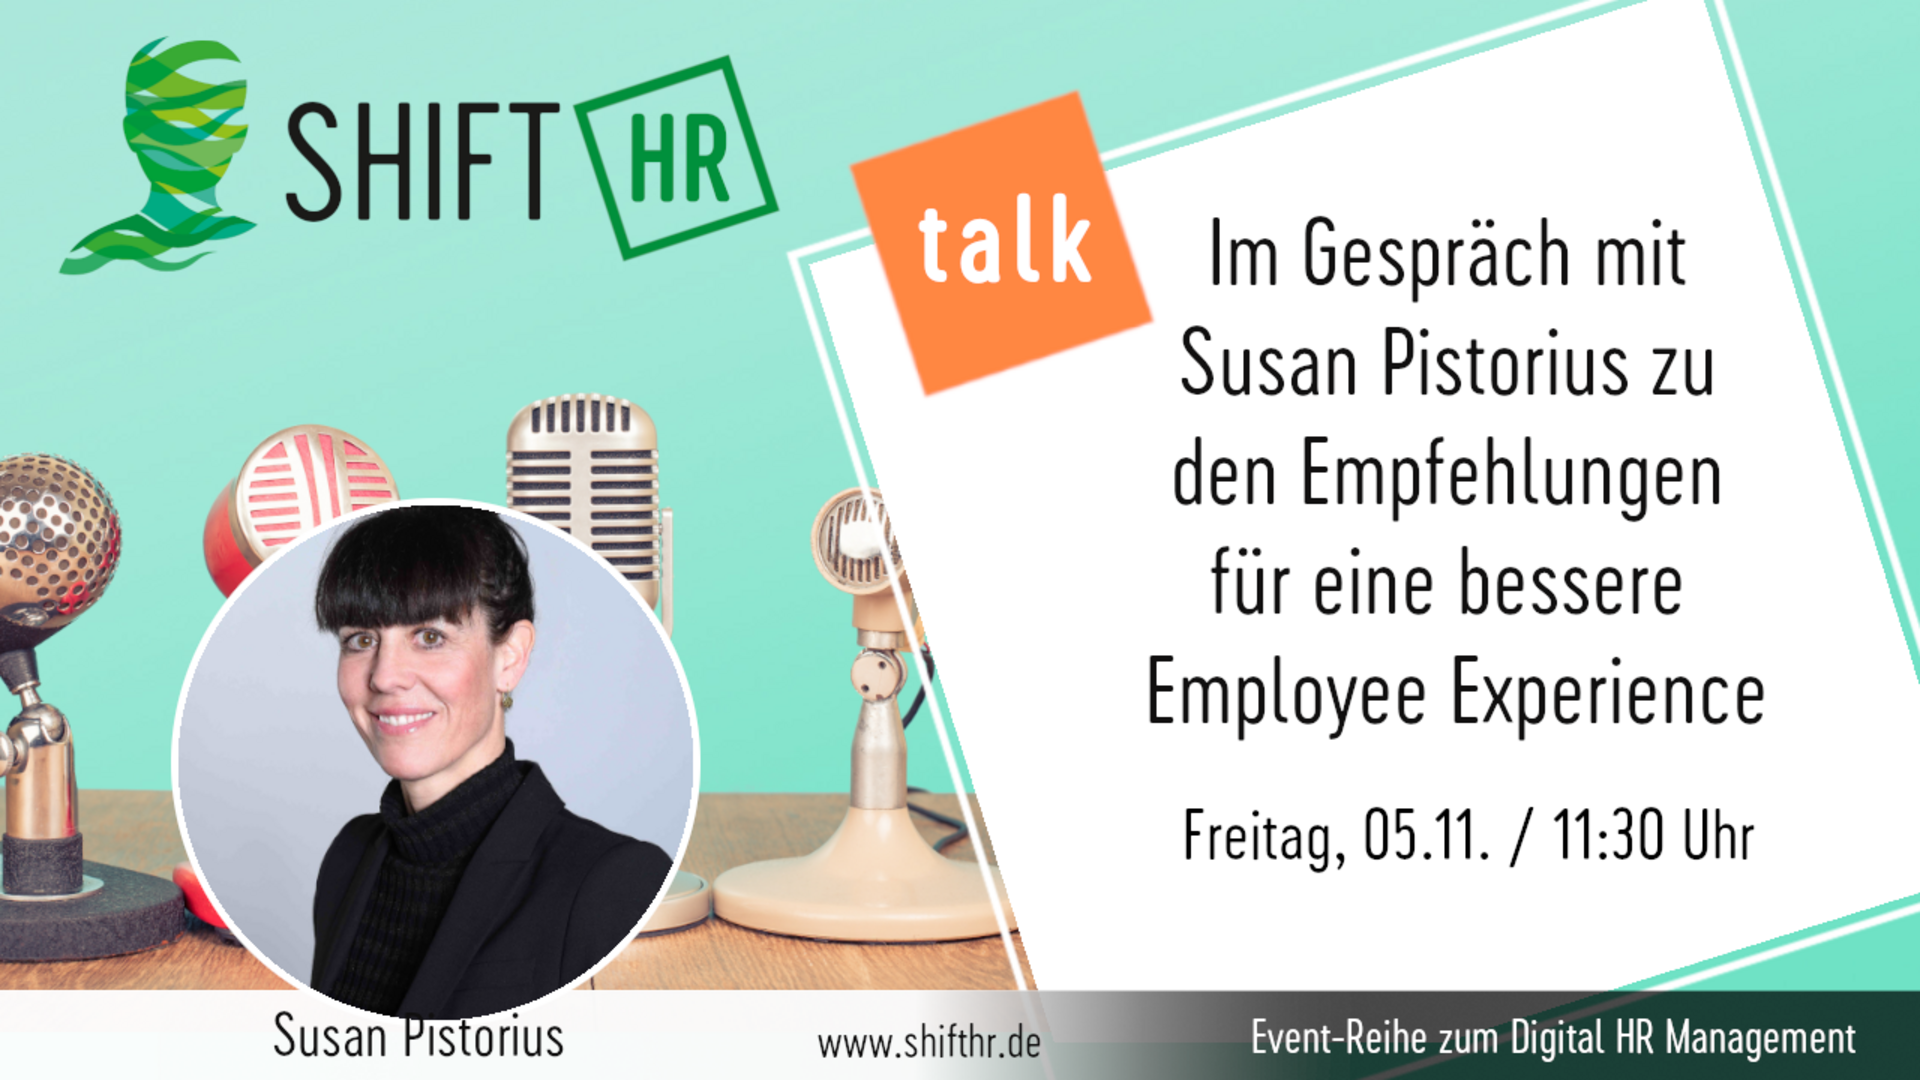 Im Gespräch mit Susan Pistorius zu den Empfehlungen für eine bessere Employee Experience